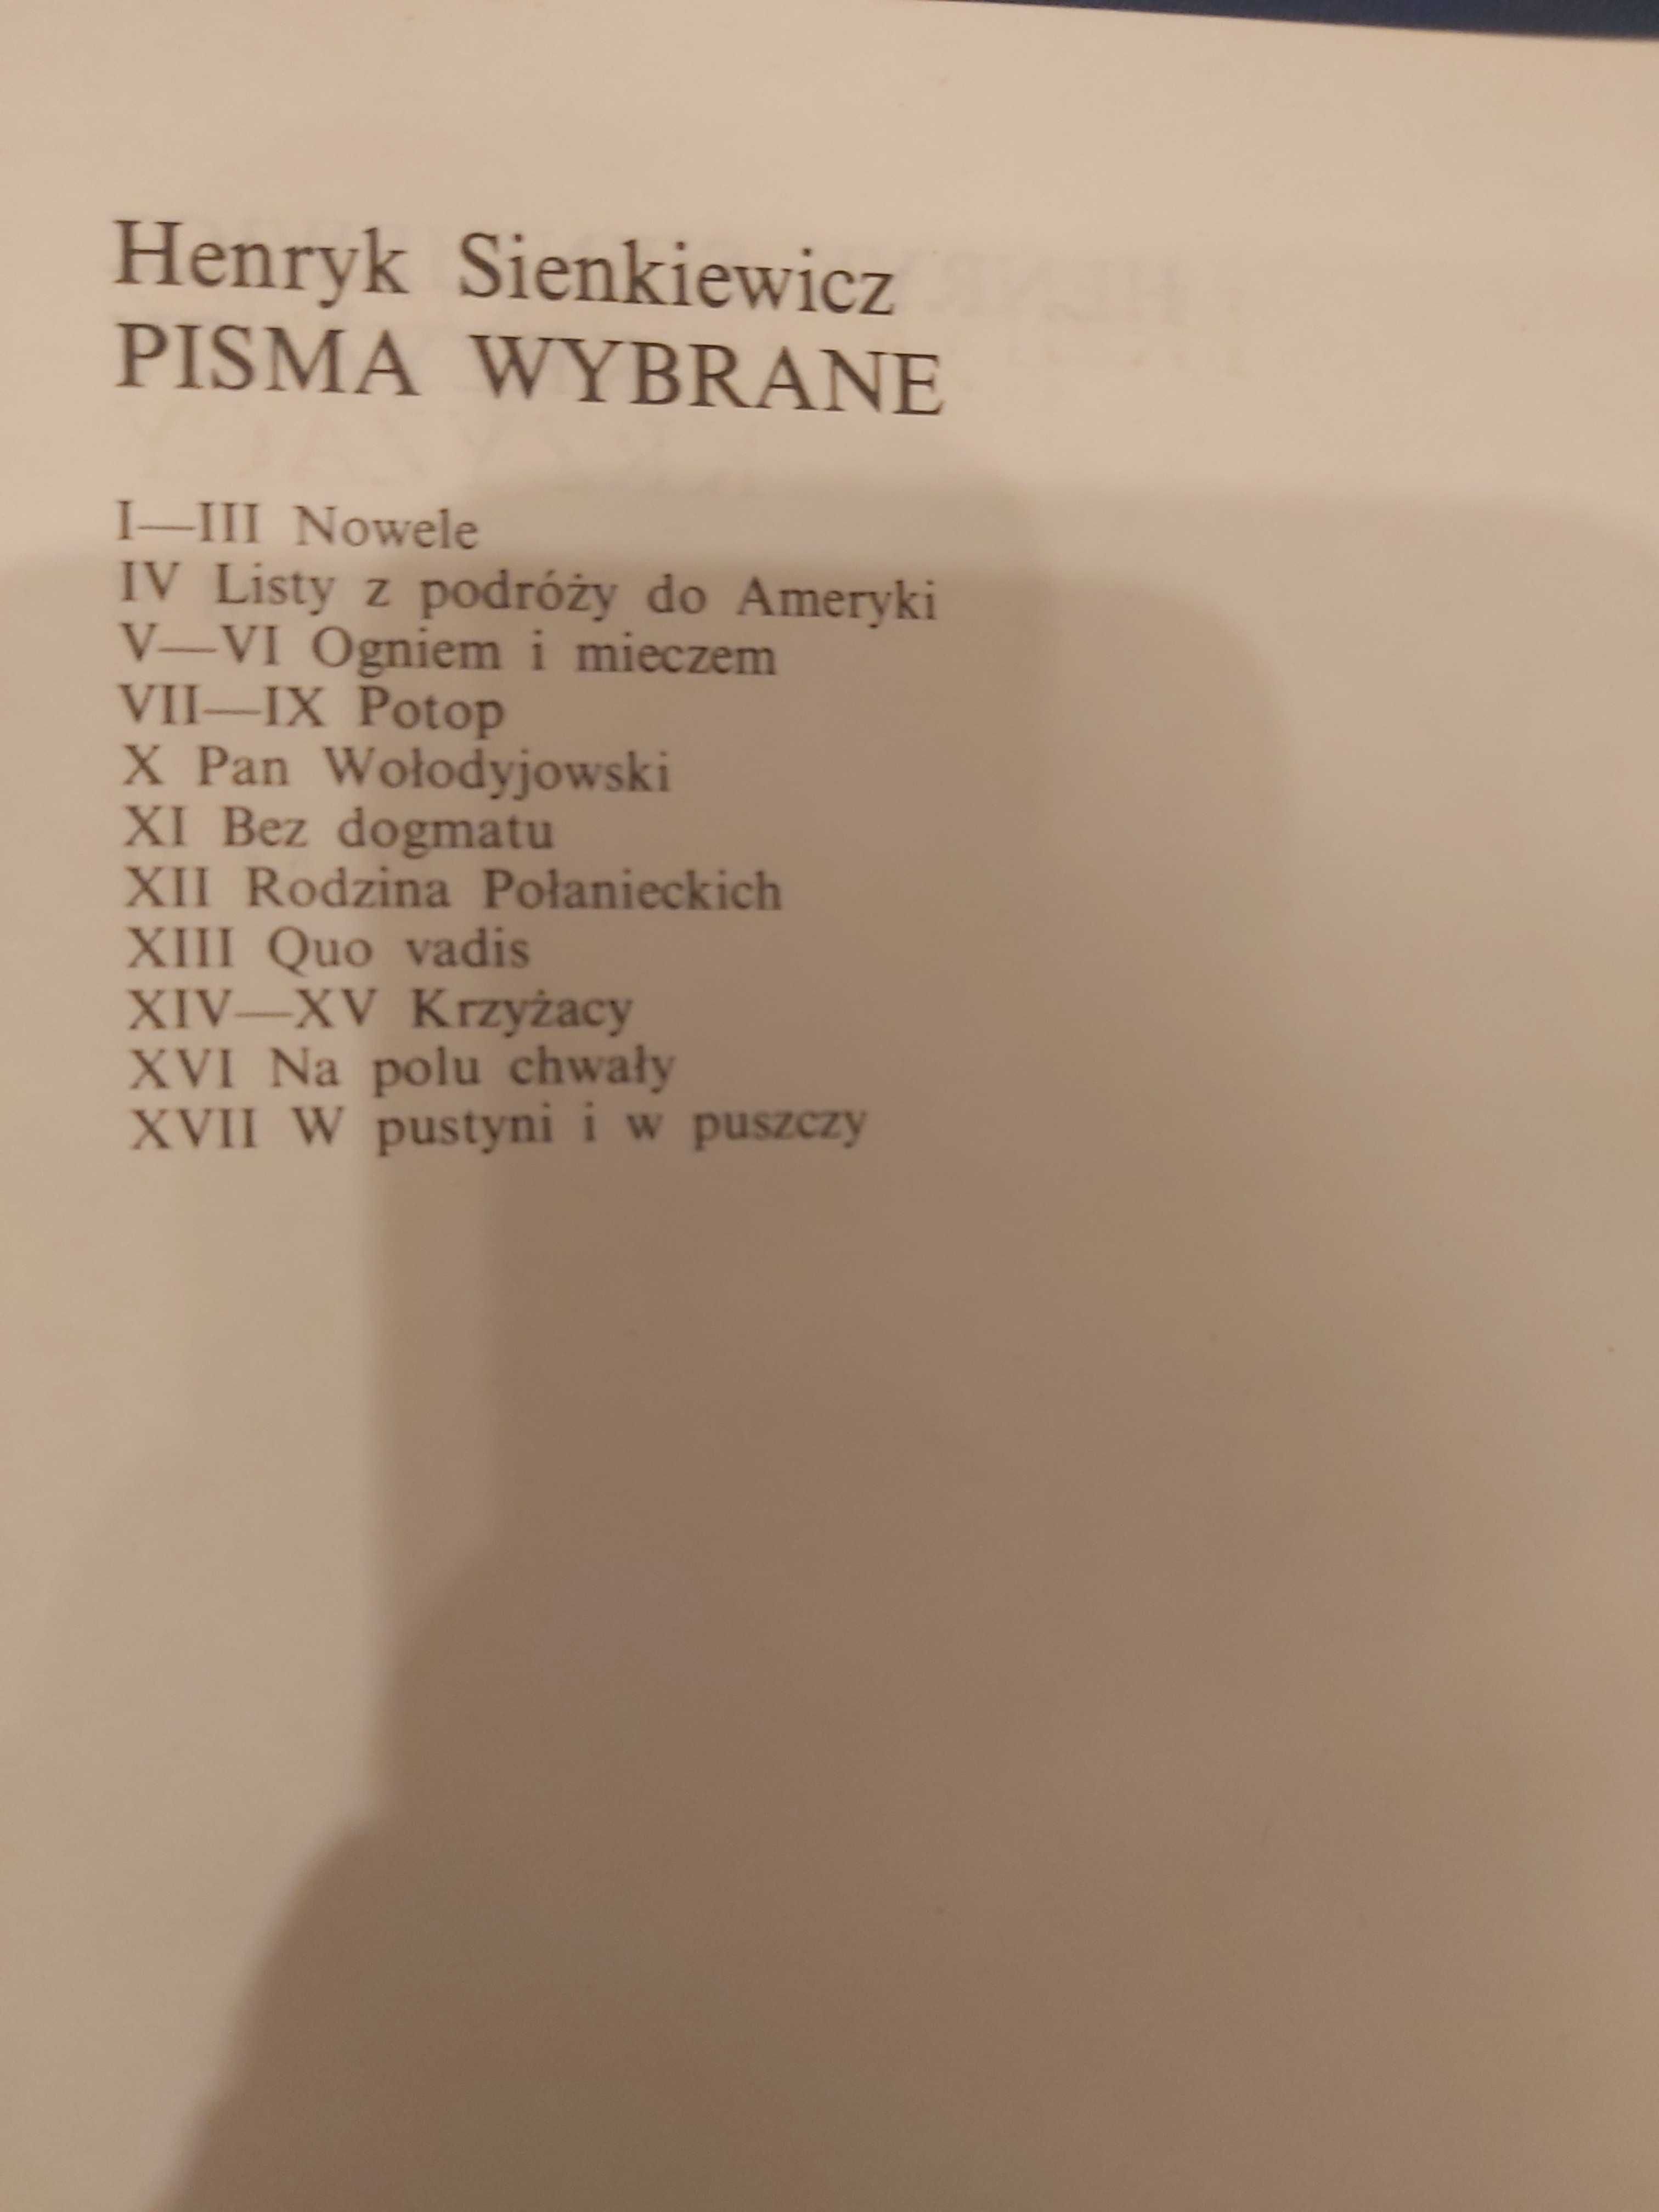 Henryk Sienkiewicz Dzieła Wybrane 17 tomów komplet